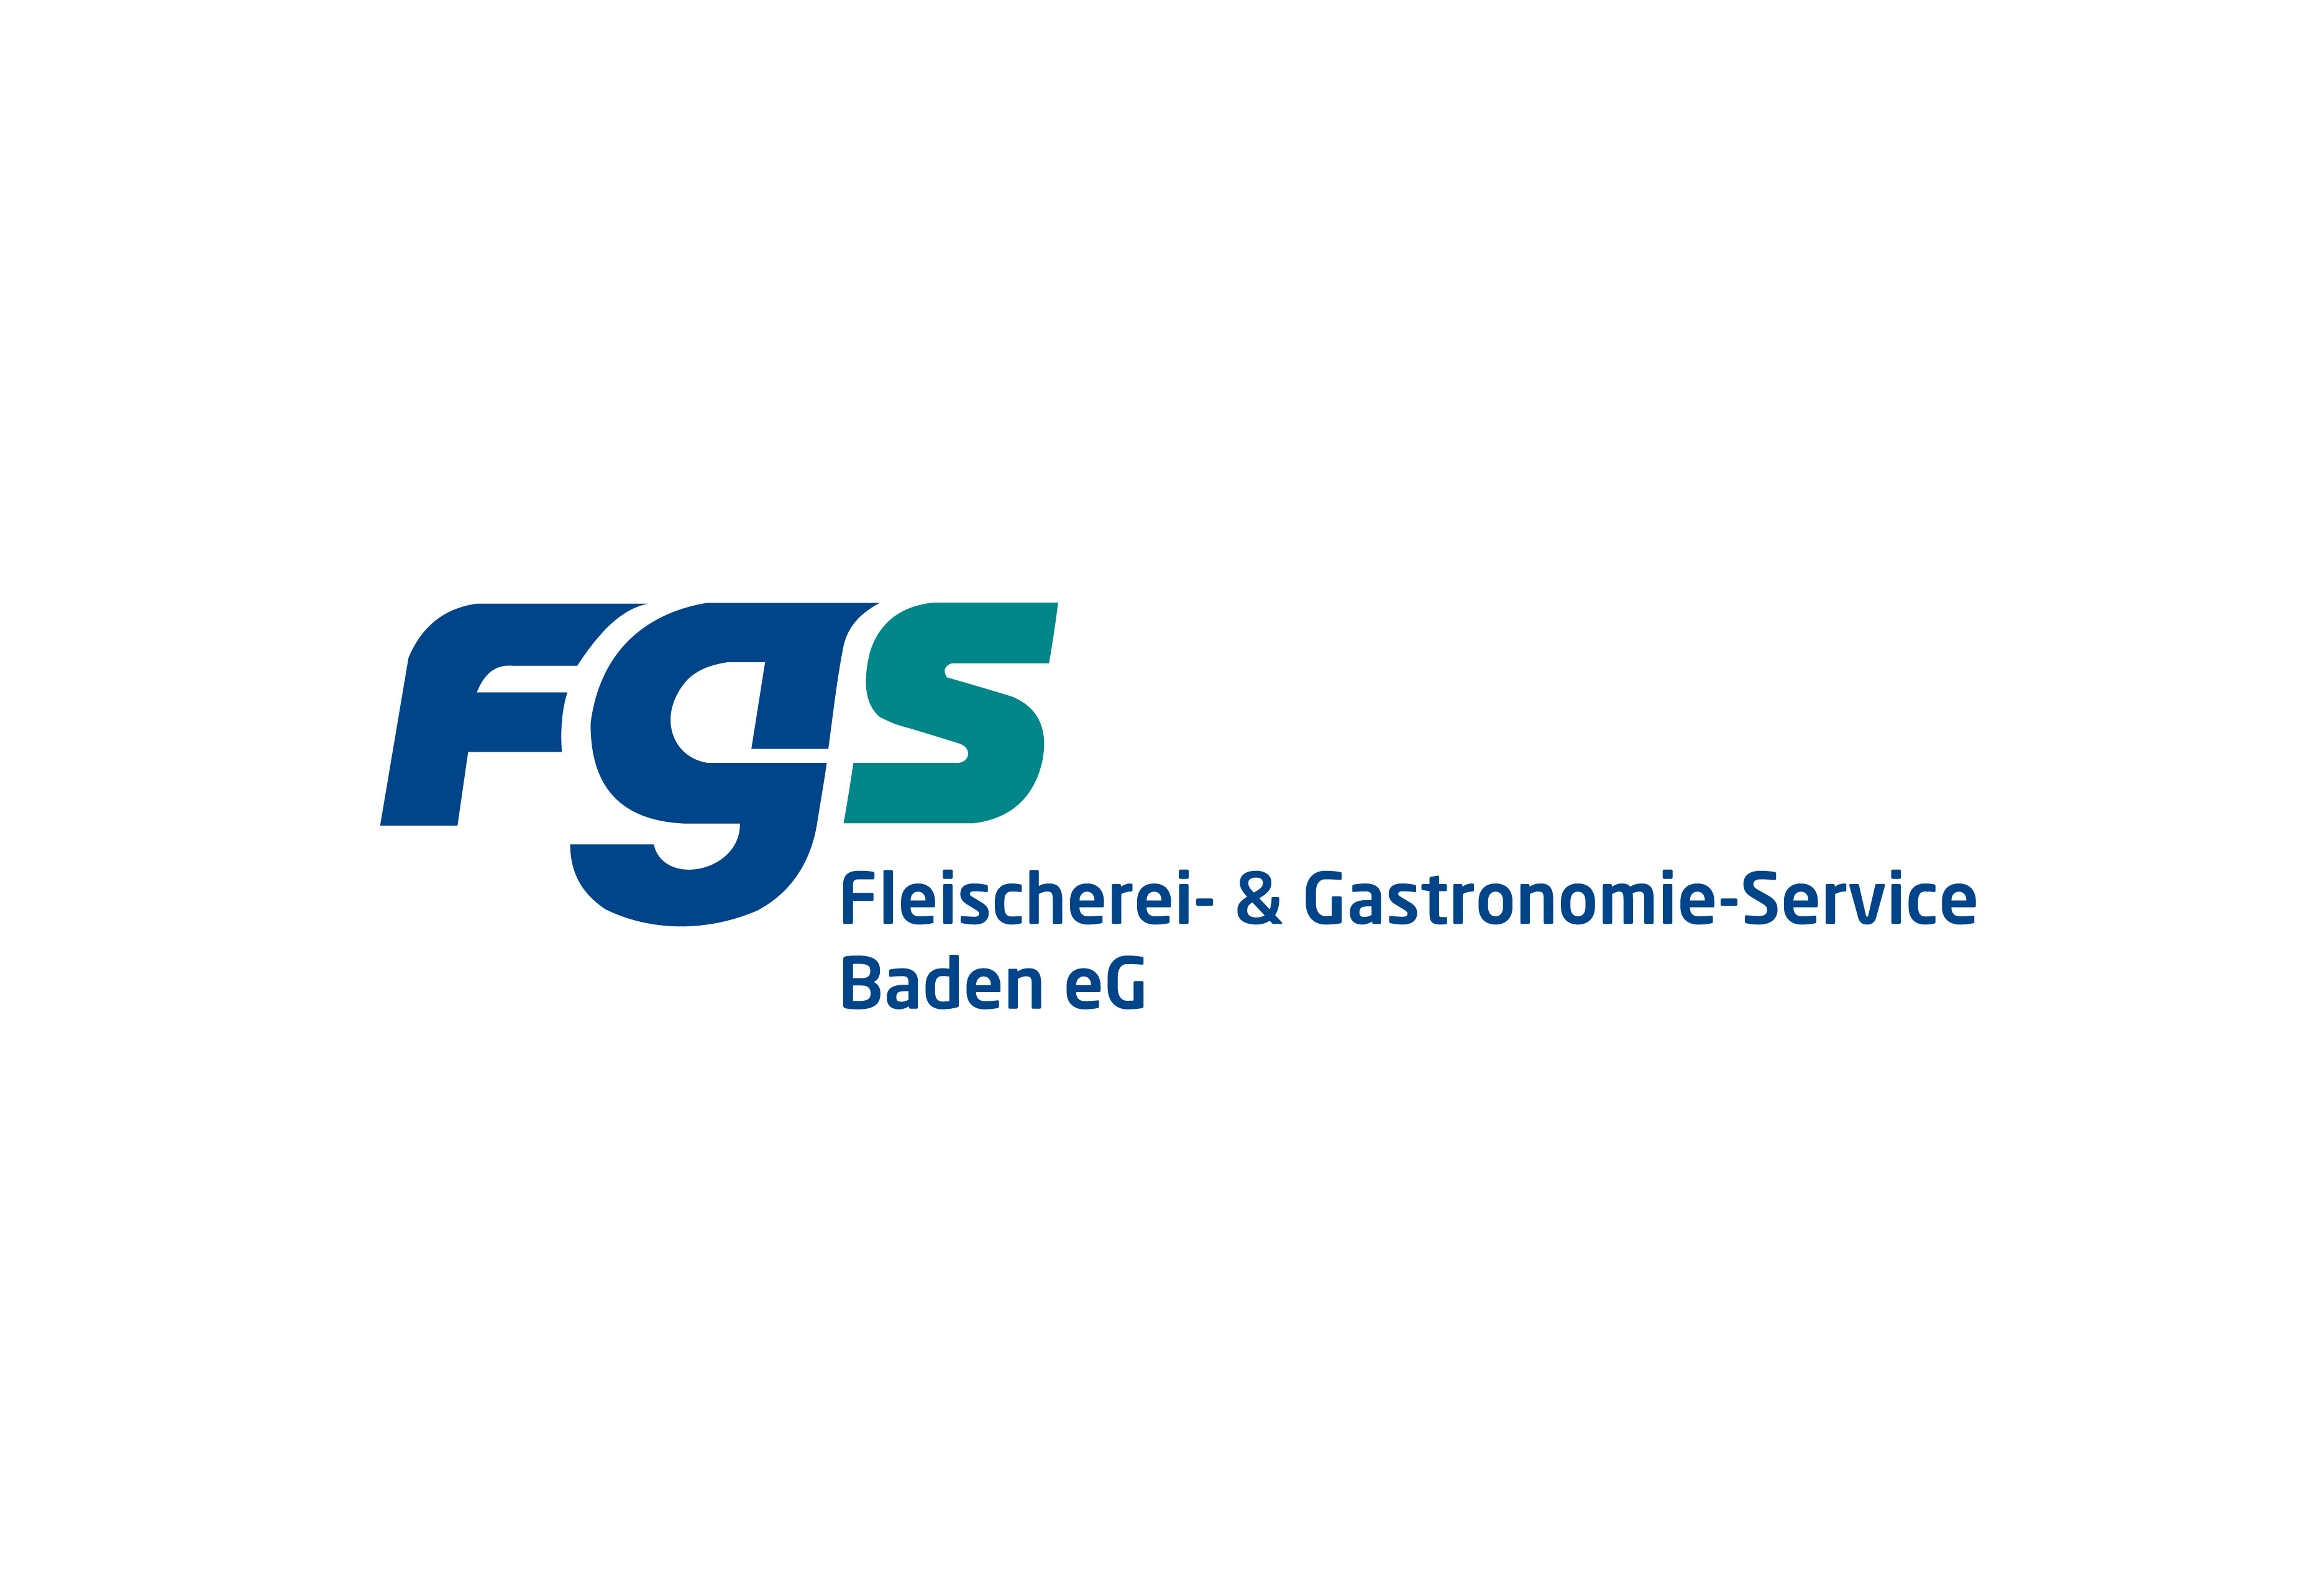 FGS logo_fgs_baden-neu2